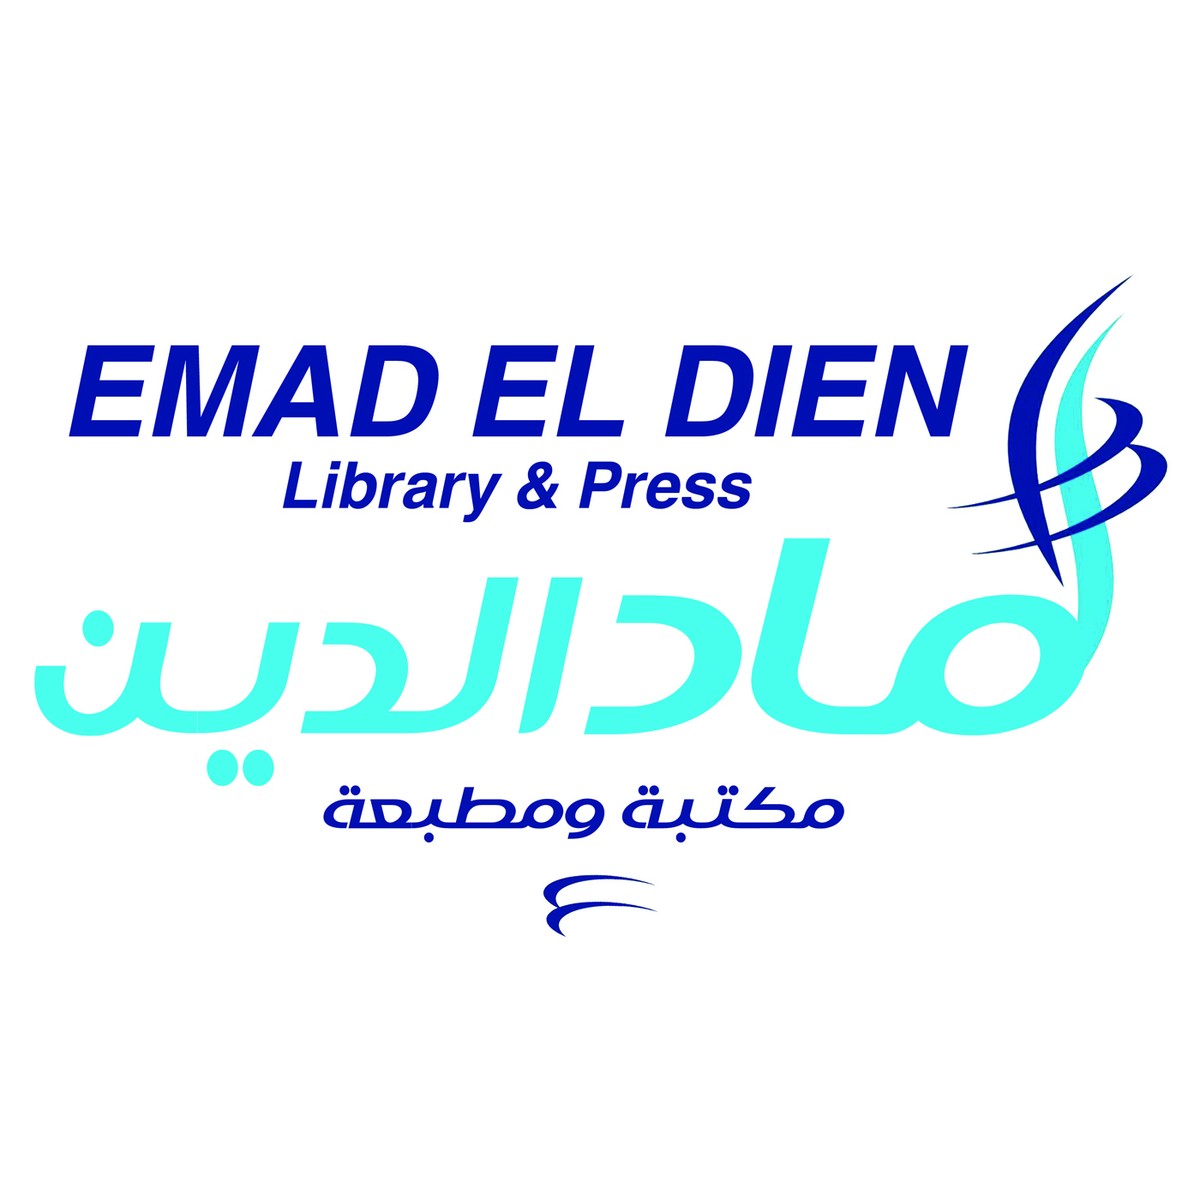 Emad_Eldeen_logo_2